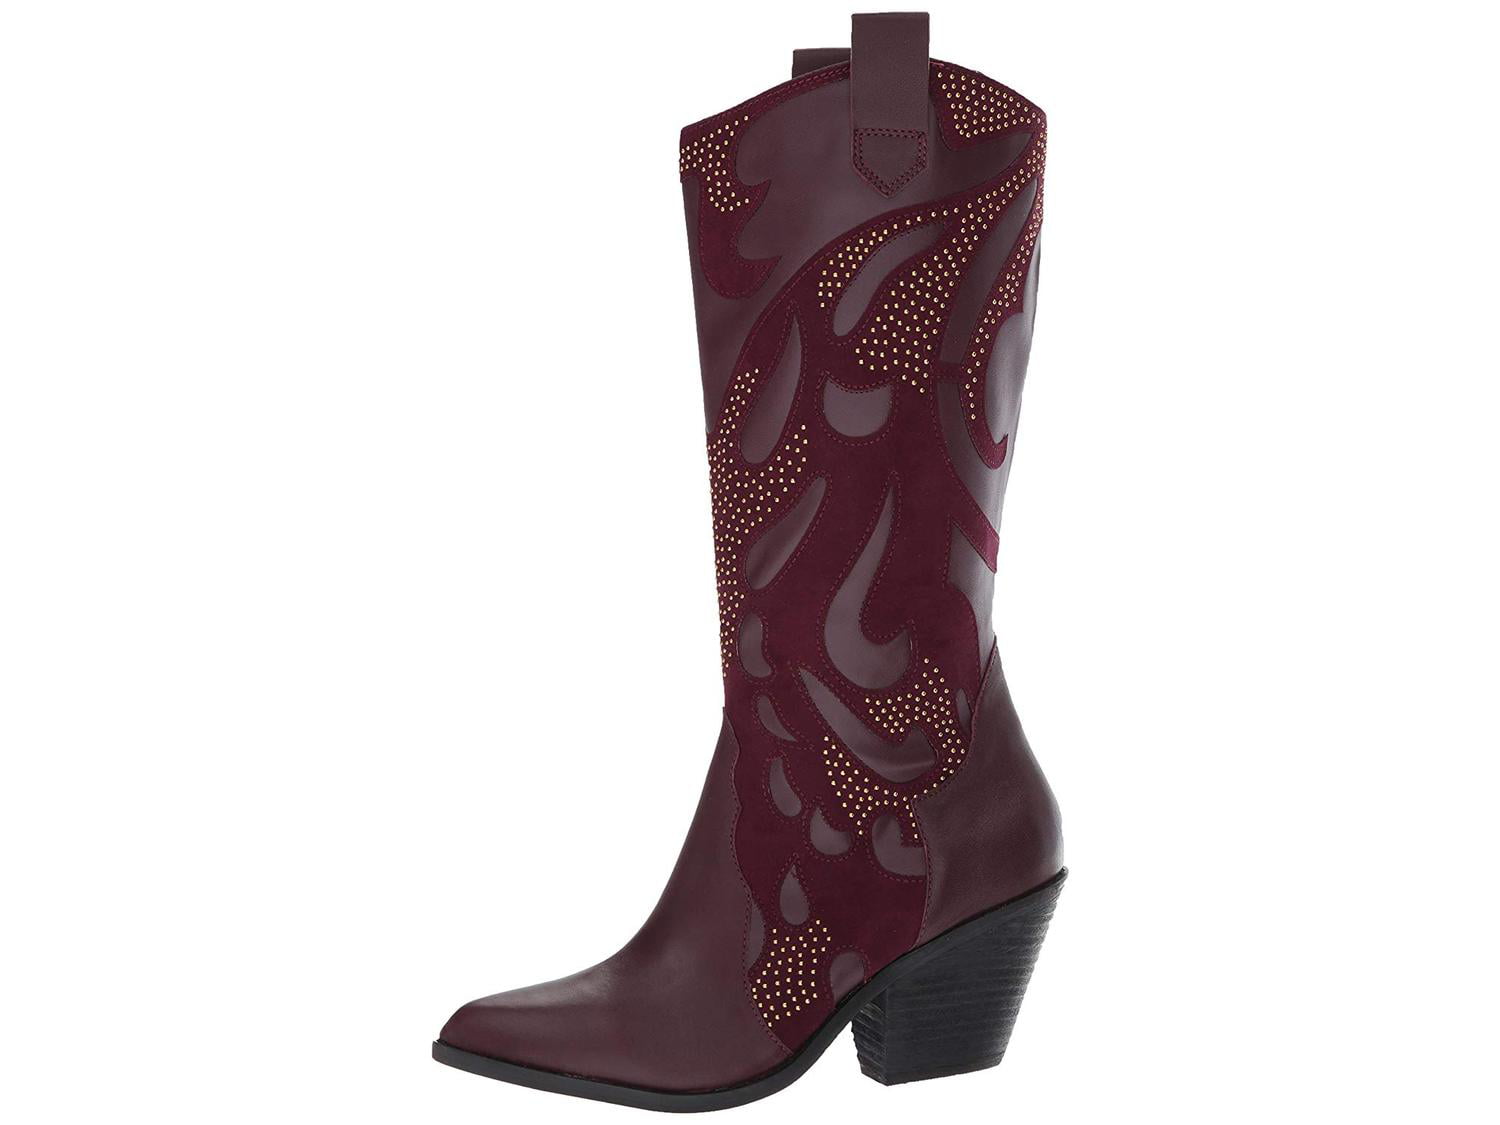 santana women's boots